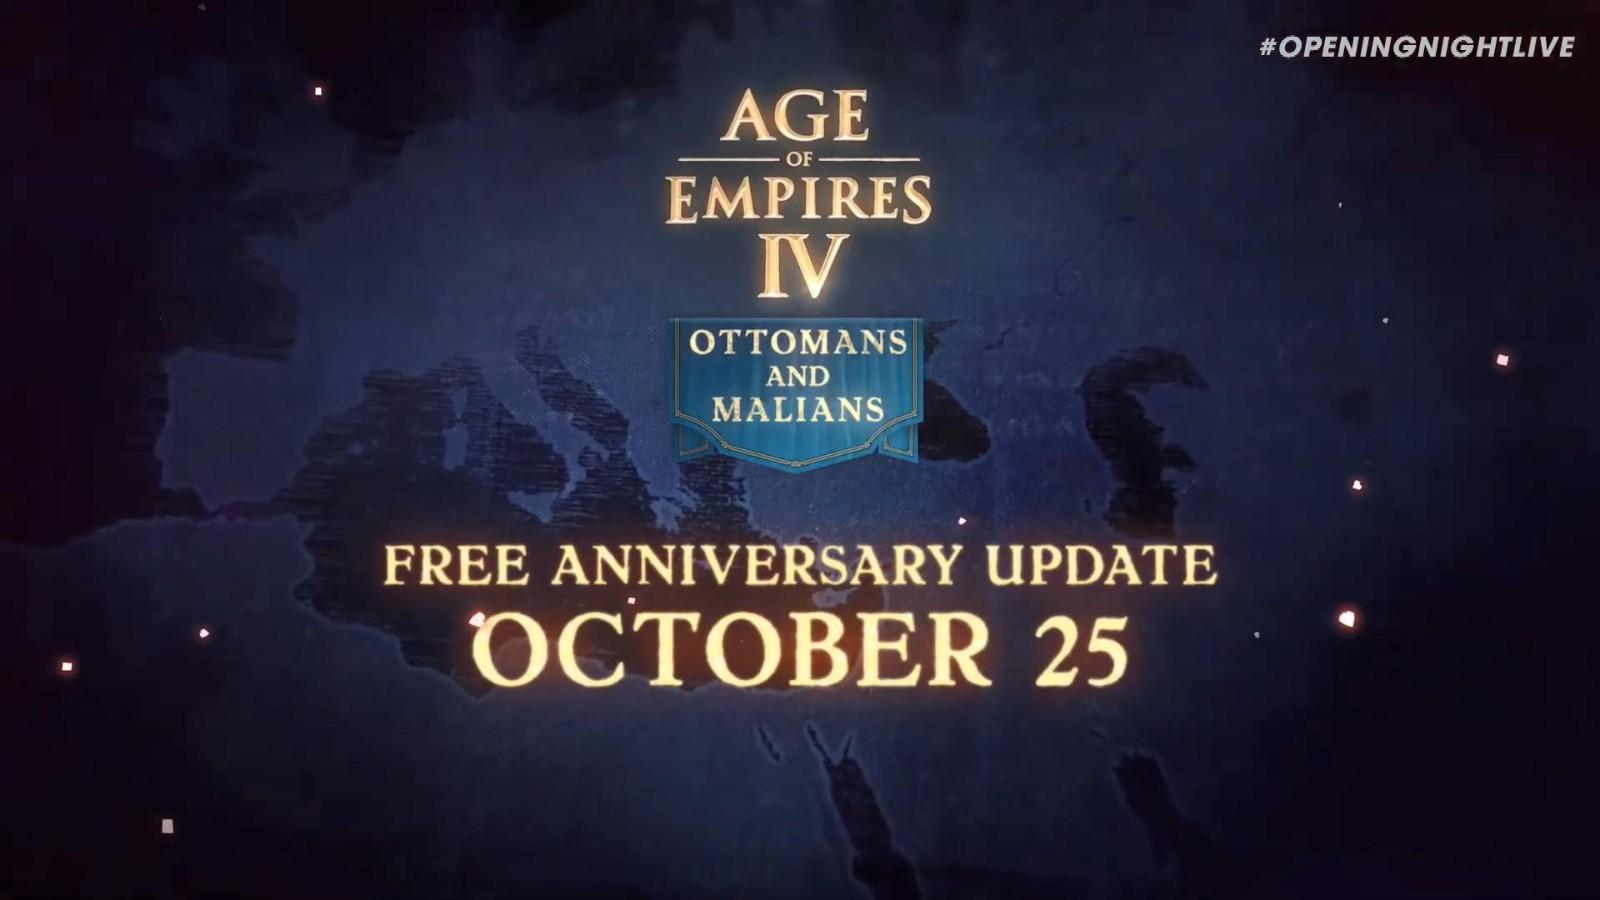 《世紀帝國IV》免費周年更新預告10月25日上線